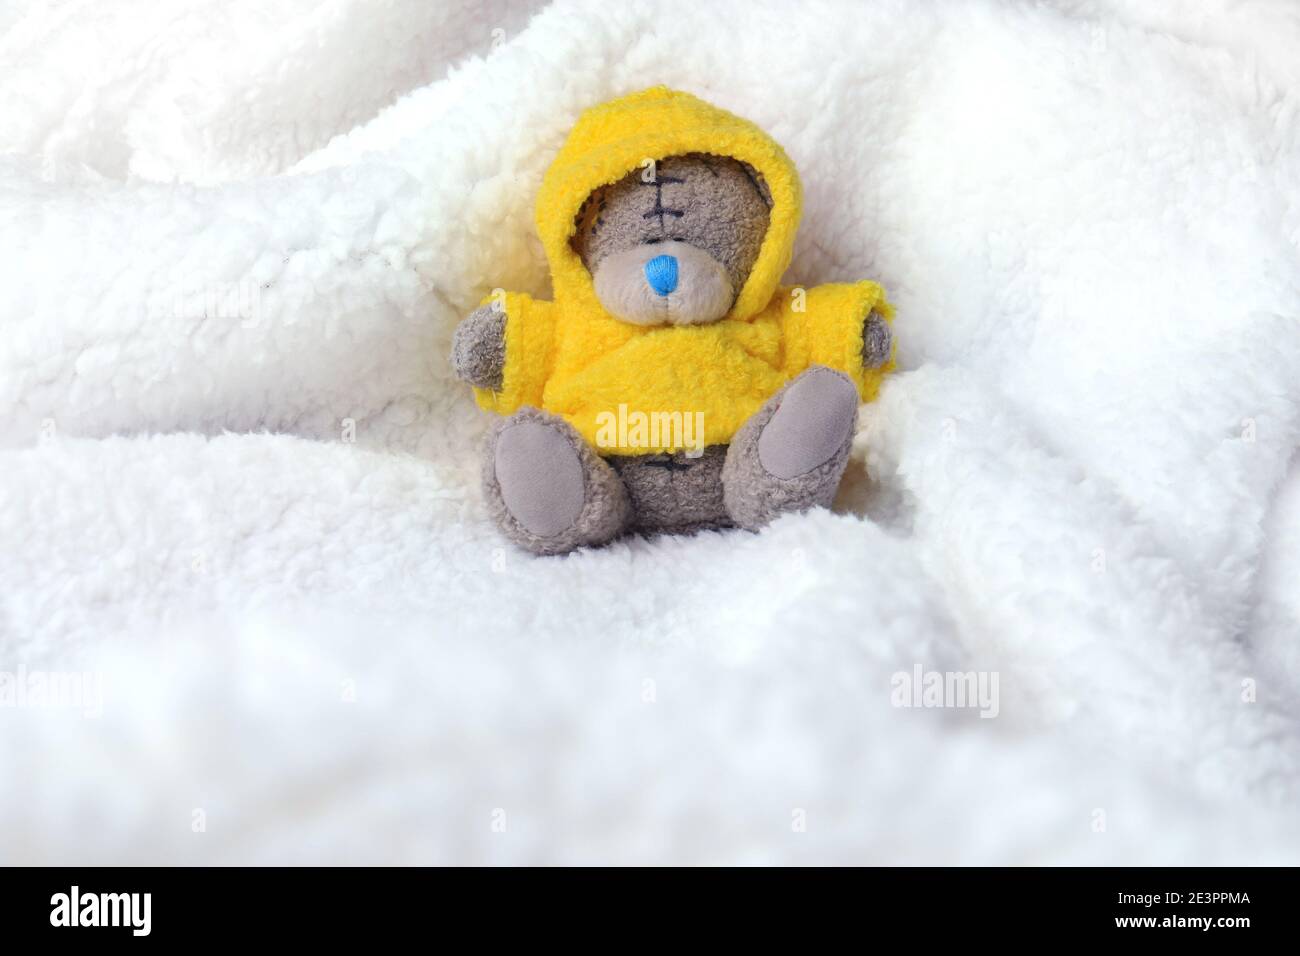 Ein kleiner Teddybär mit gelbem Mantel, der in einer weißen Felldecke sitzt. Stockfoto